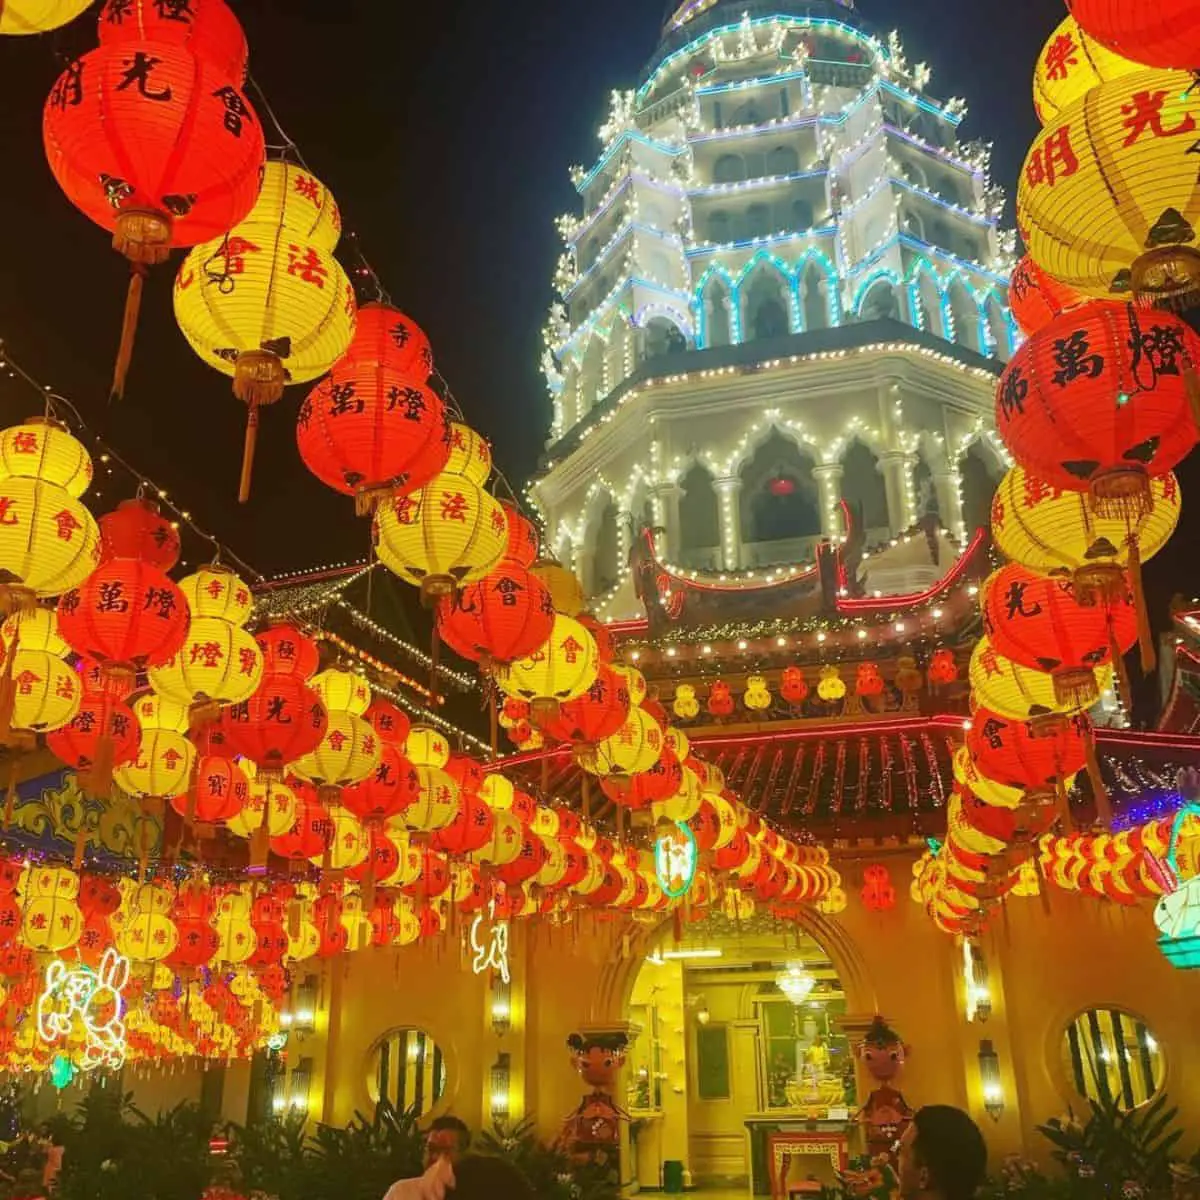 Kek Lok Si Temple’s beautiful Chinese lanterns and night lights